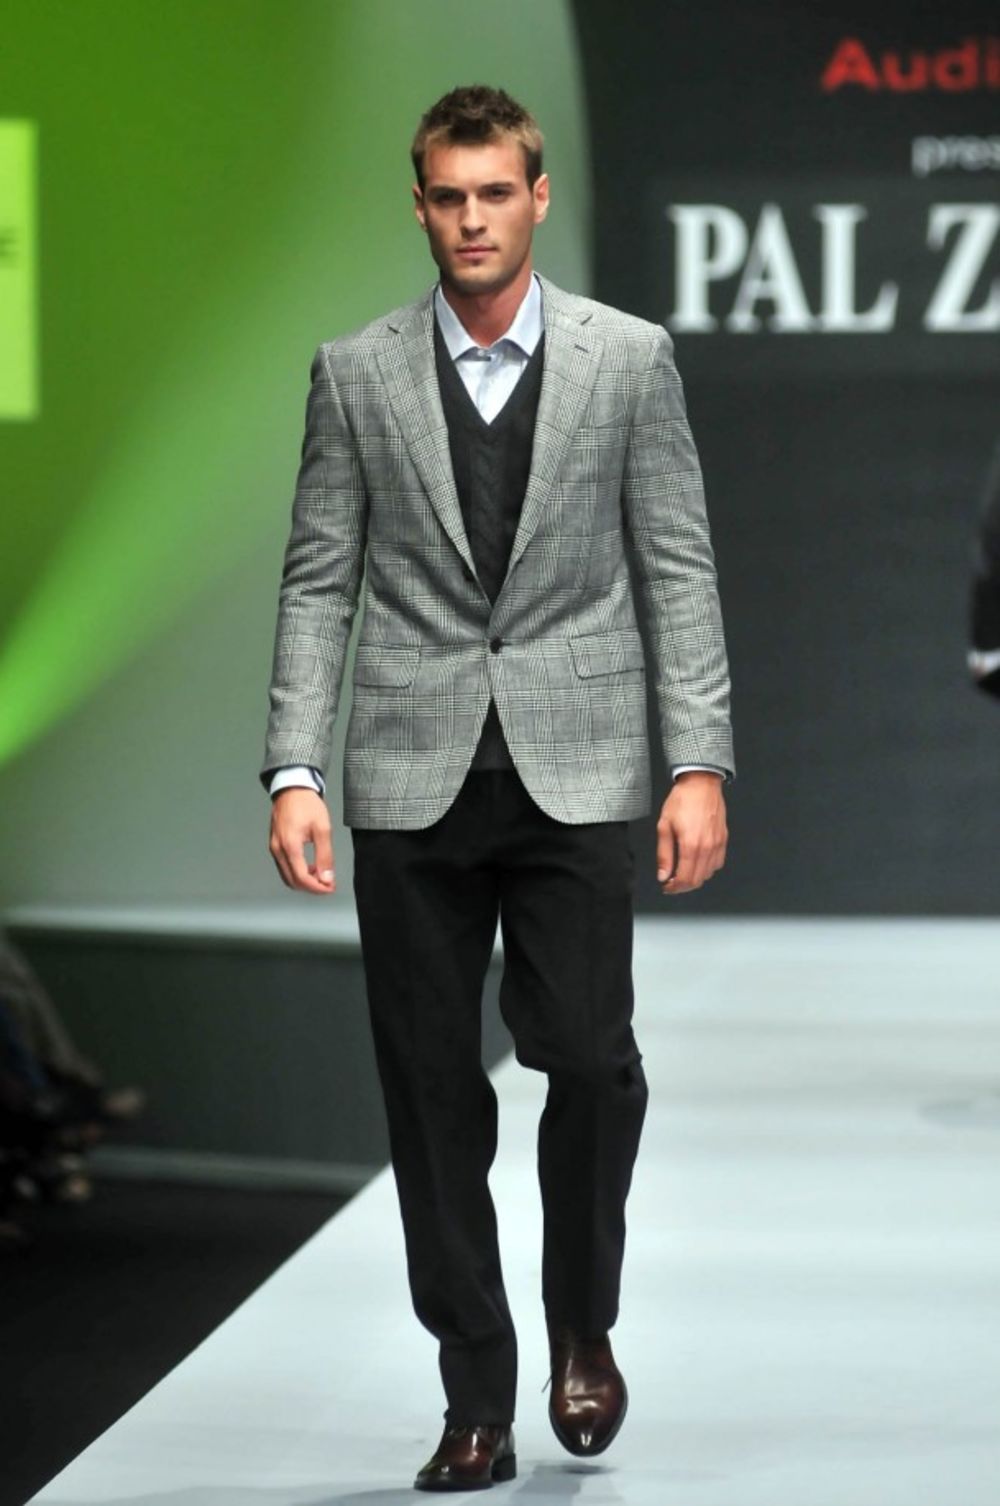 Vodeća italijanska kuća muške mode Pal Zileri dvadeset i osmi put prezentovala je aktuelnu kolekciju, a u ulozi manekena specijalno se pojavio i pevač Džej Ramadanovski